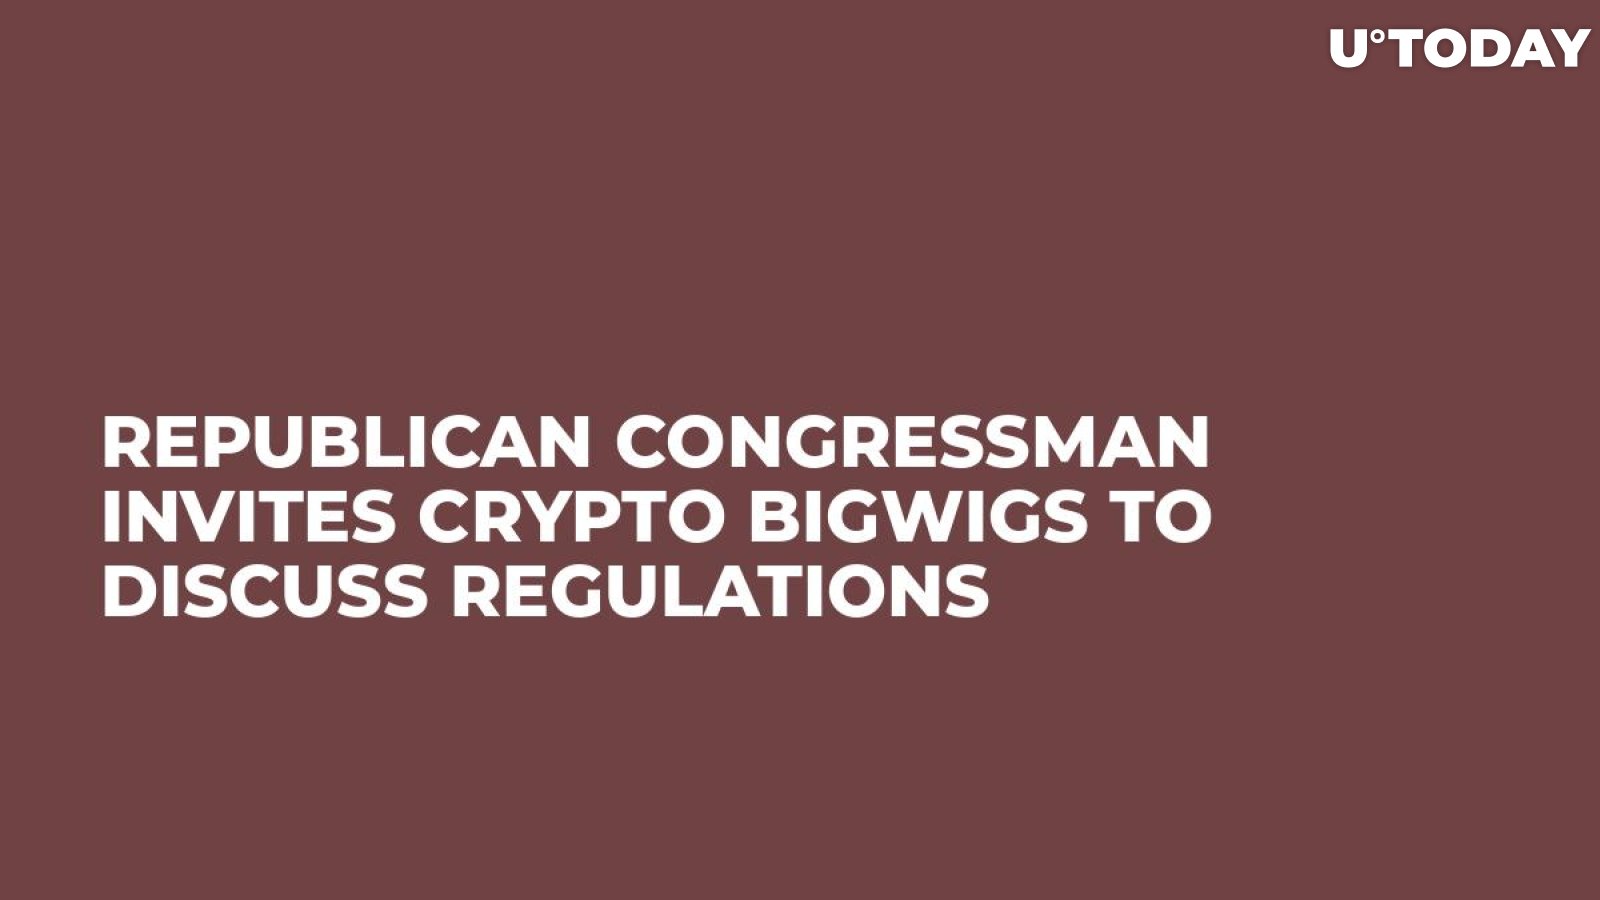 Republican Congressman Invites Crypto Bigwigs to Discuss Regulations